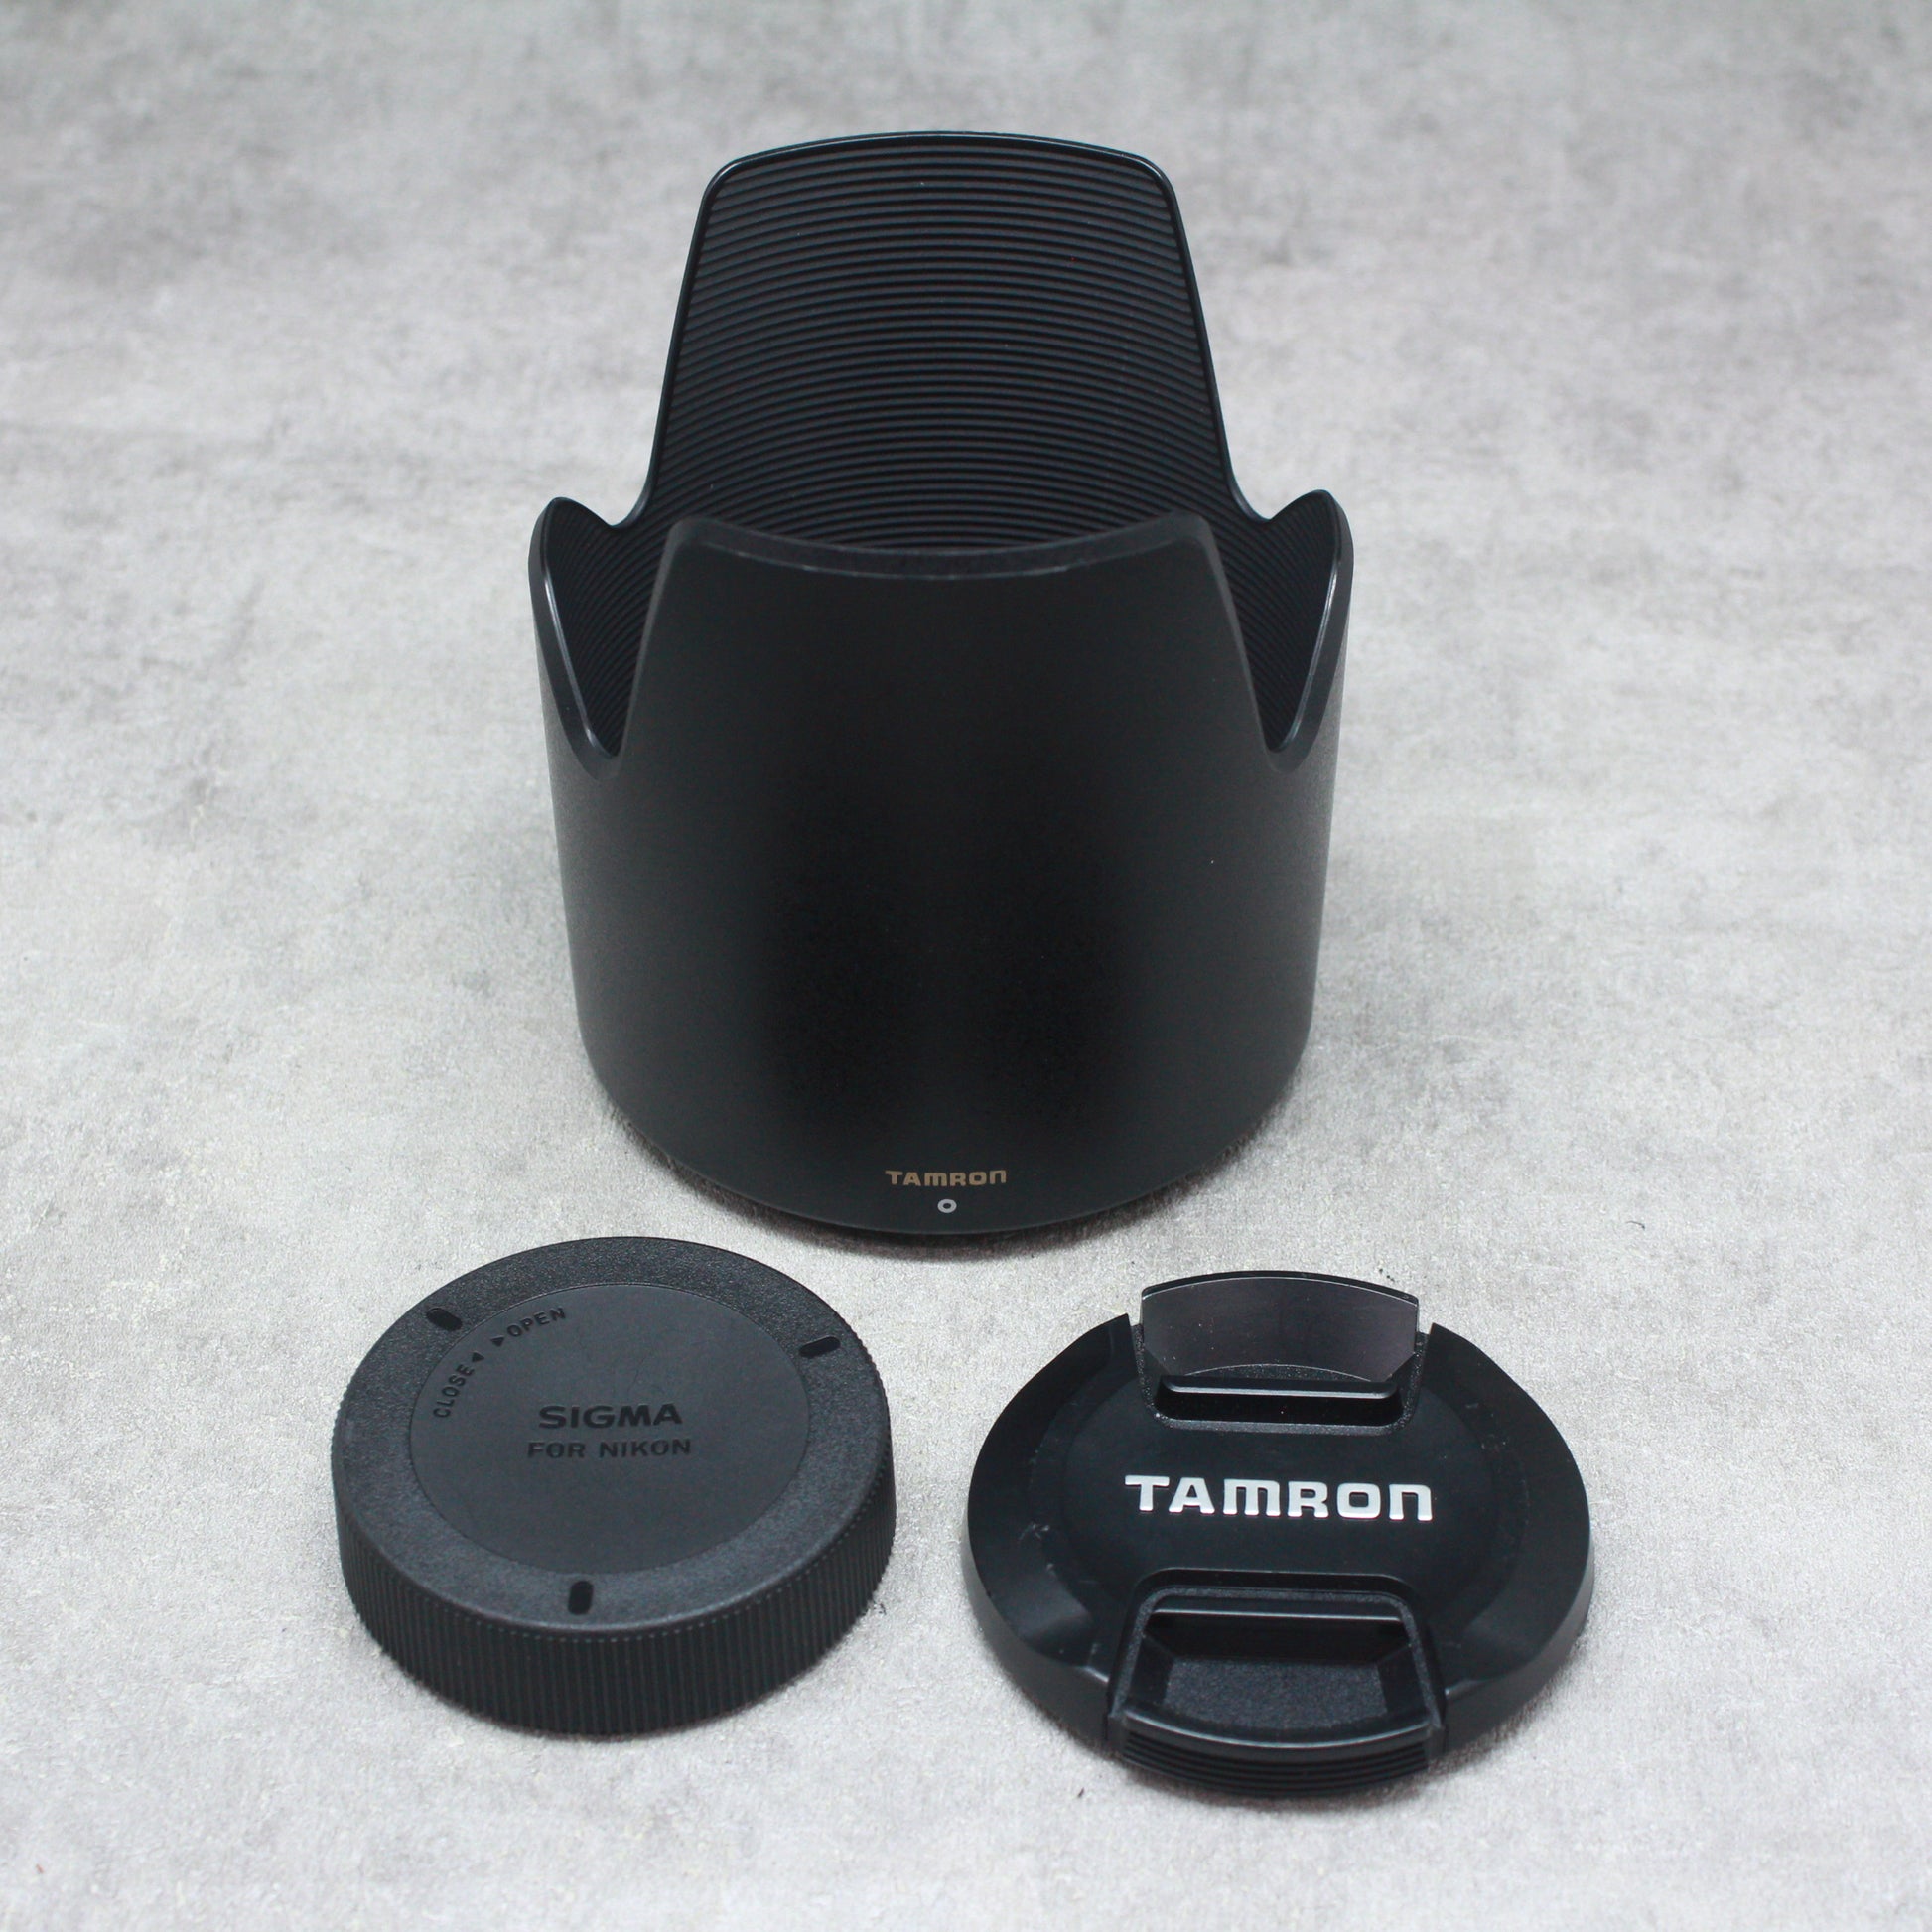 中古品 TAMRON SP 70-300mm F/4-5.6 Di VC USD (Model A005) [ニコン用 